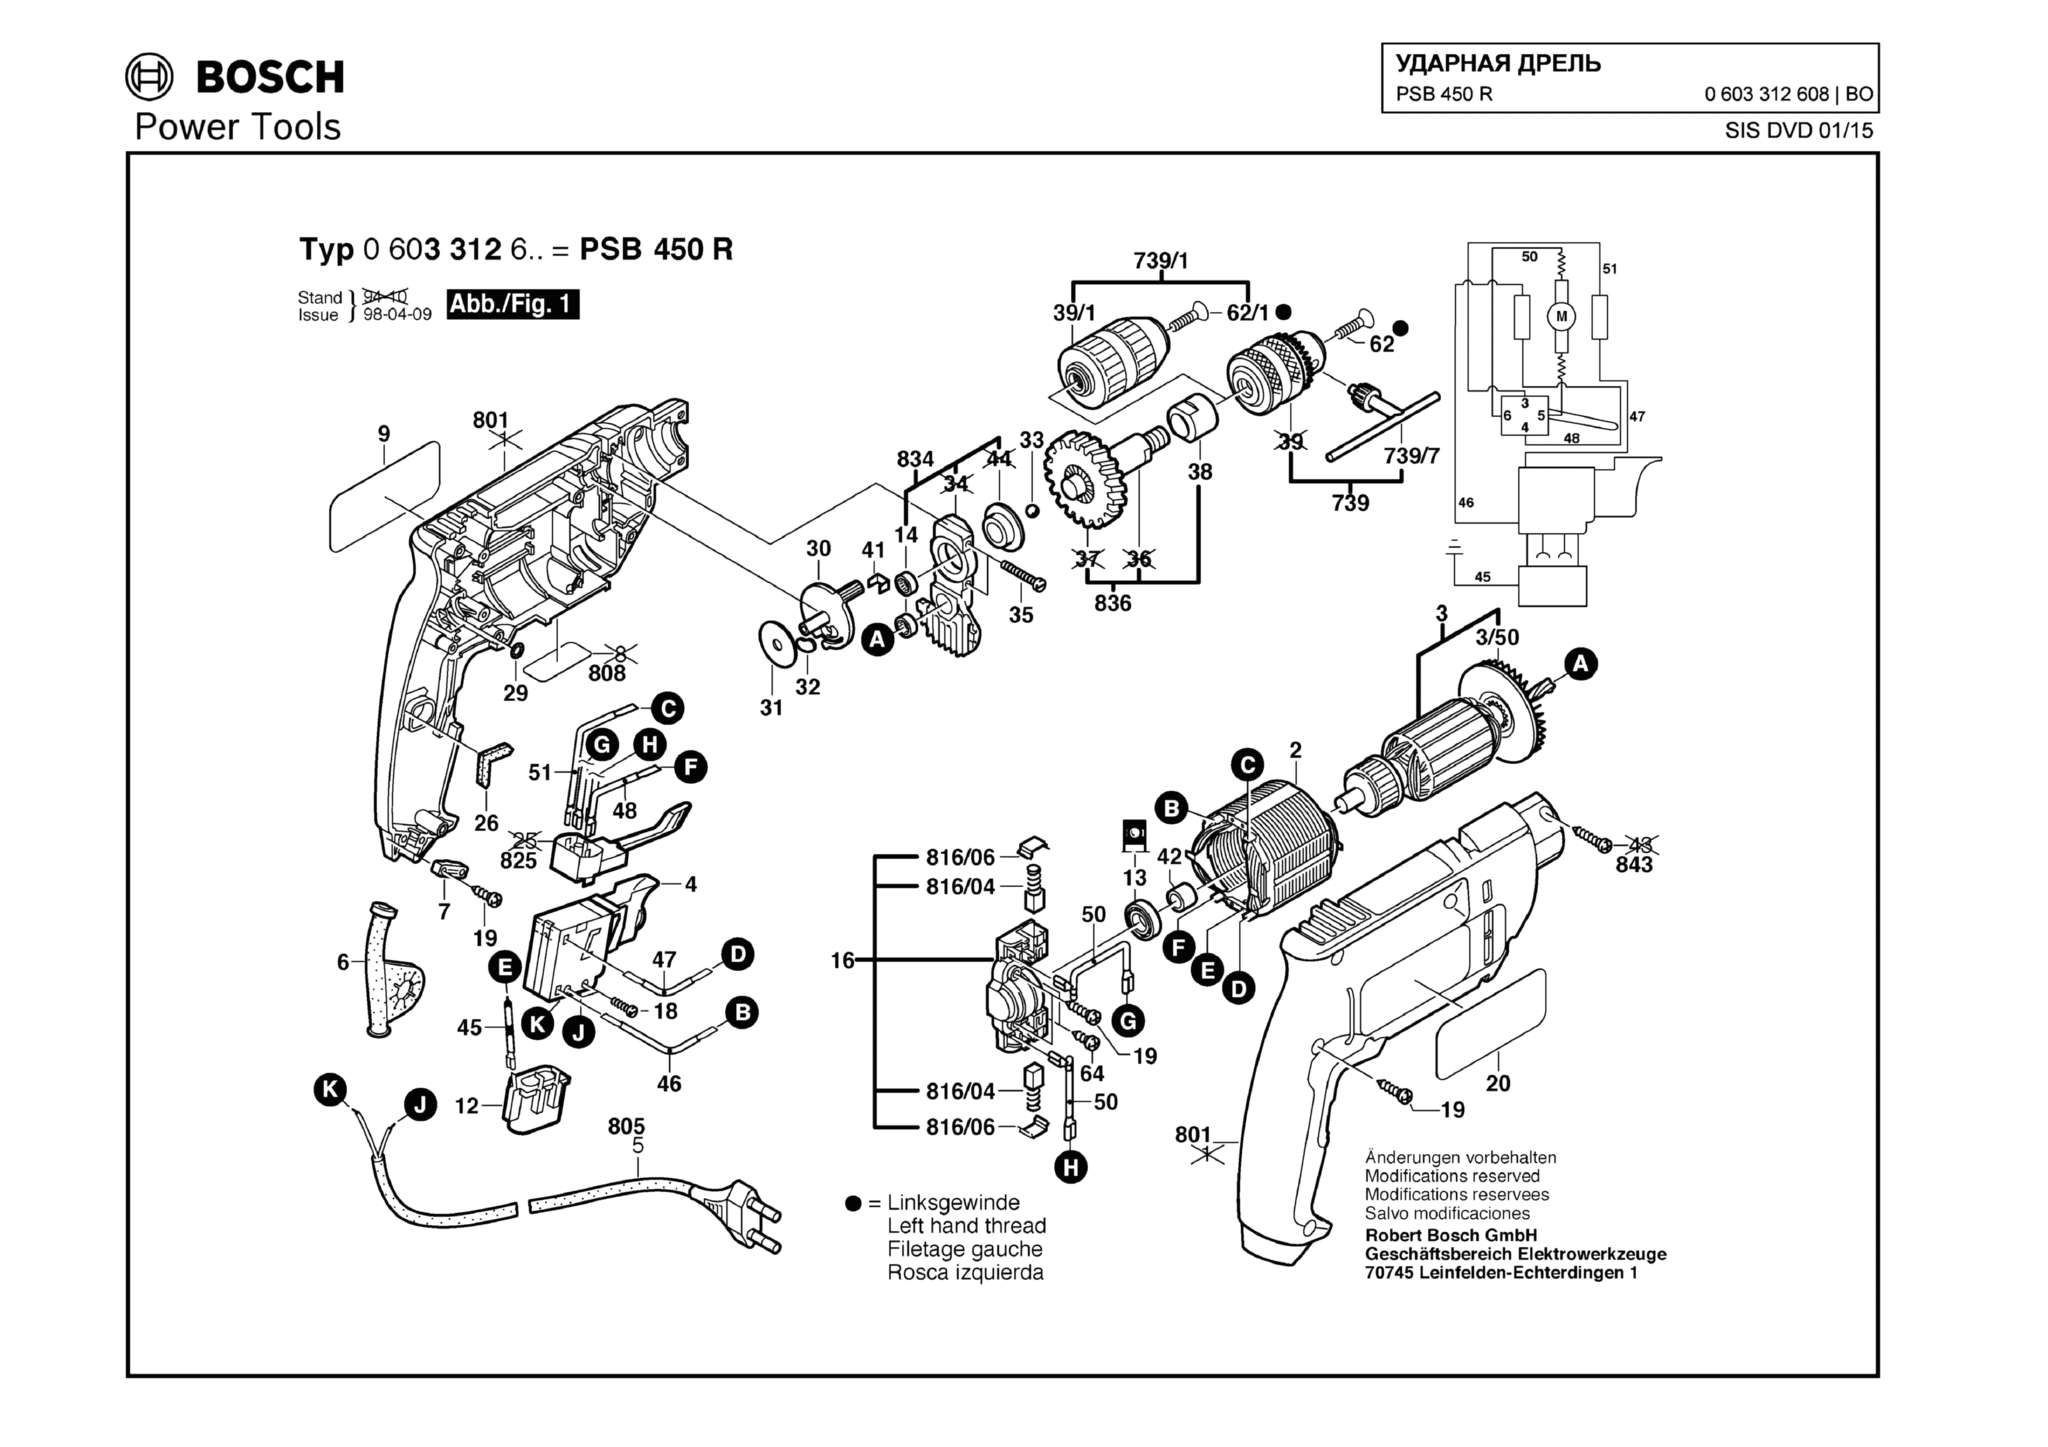 Запчасти, схема и деталировка Bosch PSB 450 R (ТИП 0603312608)